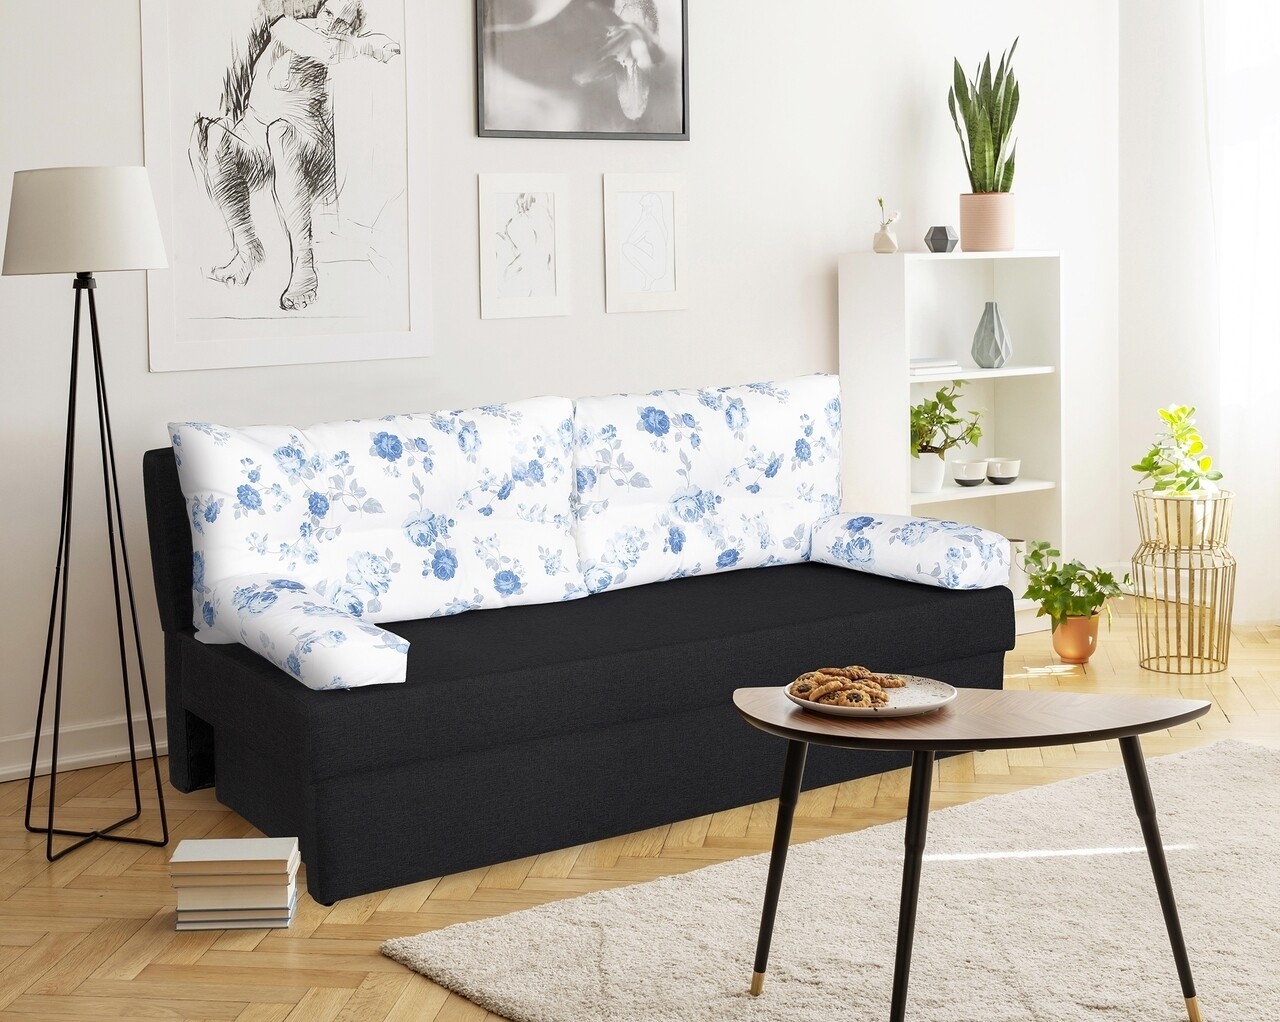 Bedora alfi antracit kihúzható kanapé 192x80x77 cm tárolóládával, blue anemone